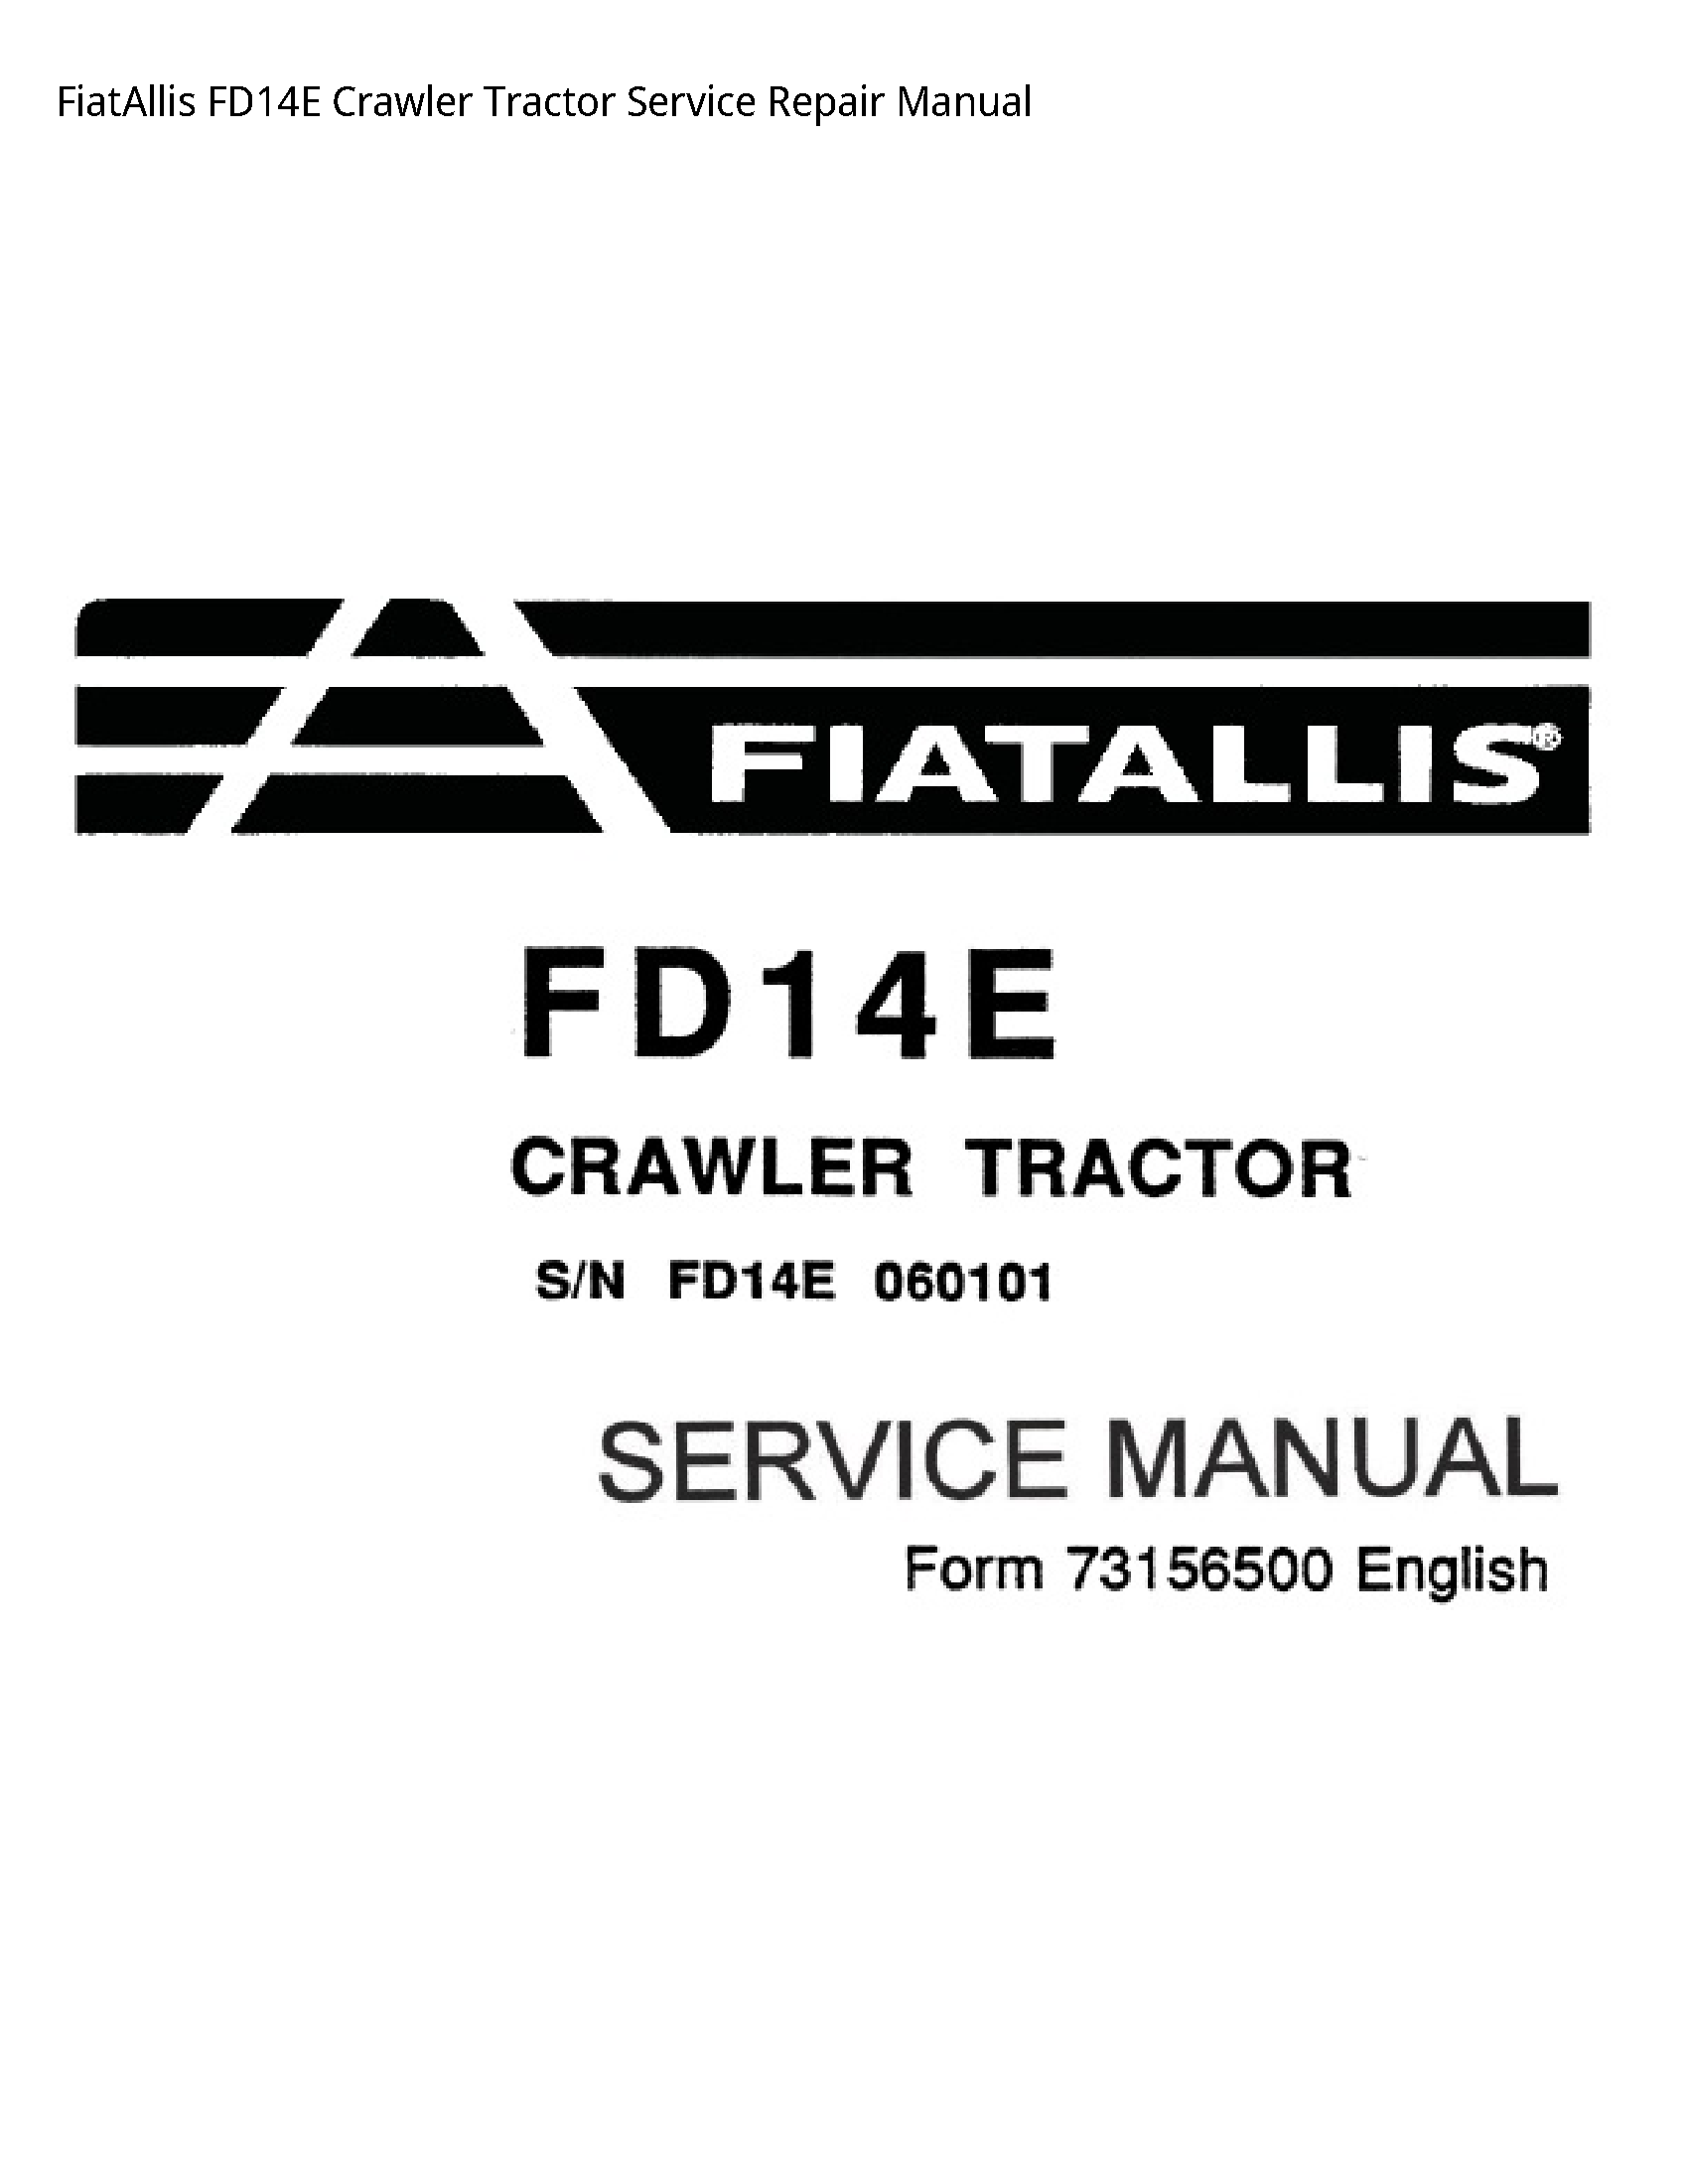 Fiatallis FD14E Crawler Tractor manual